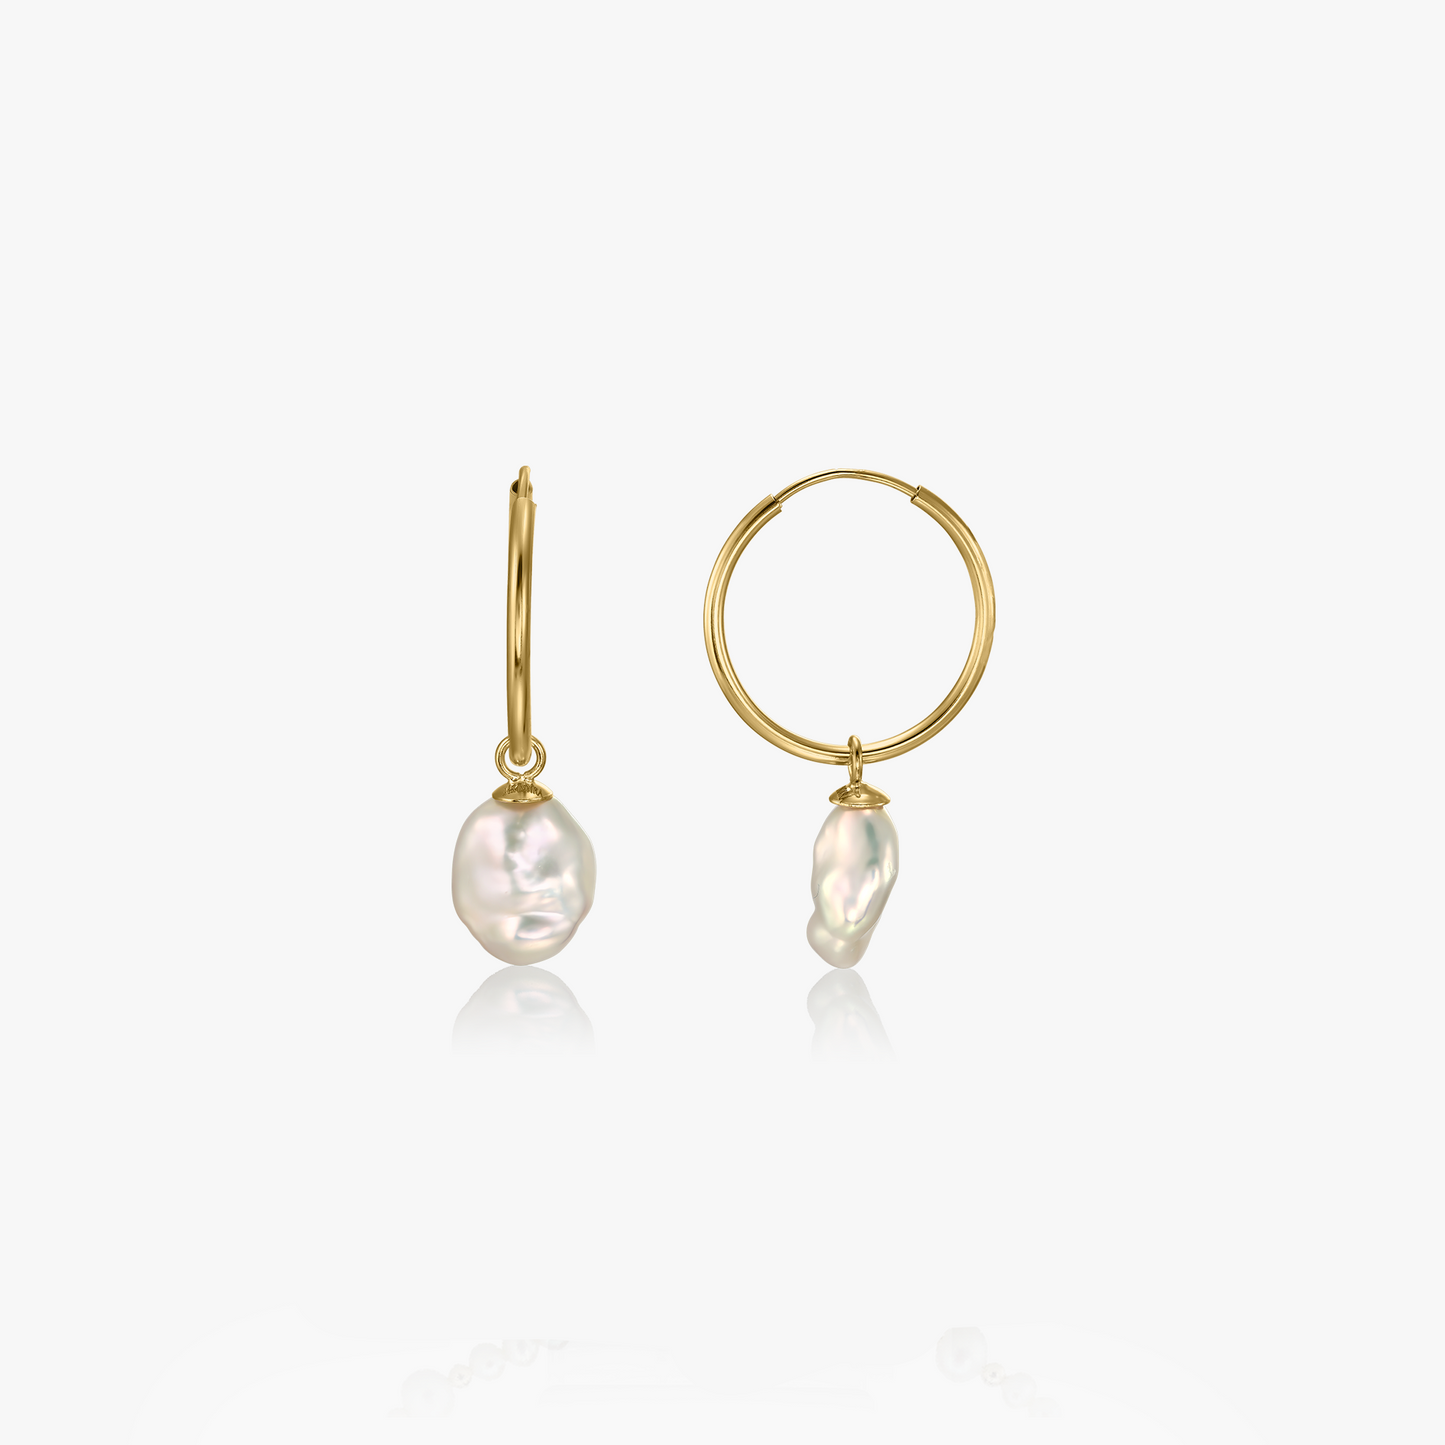 Rhonda gold earrings - Natural Pearls